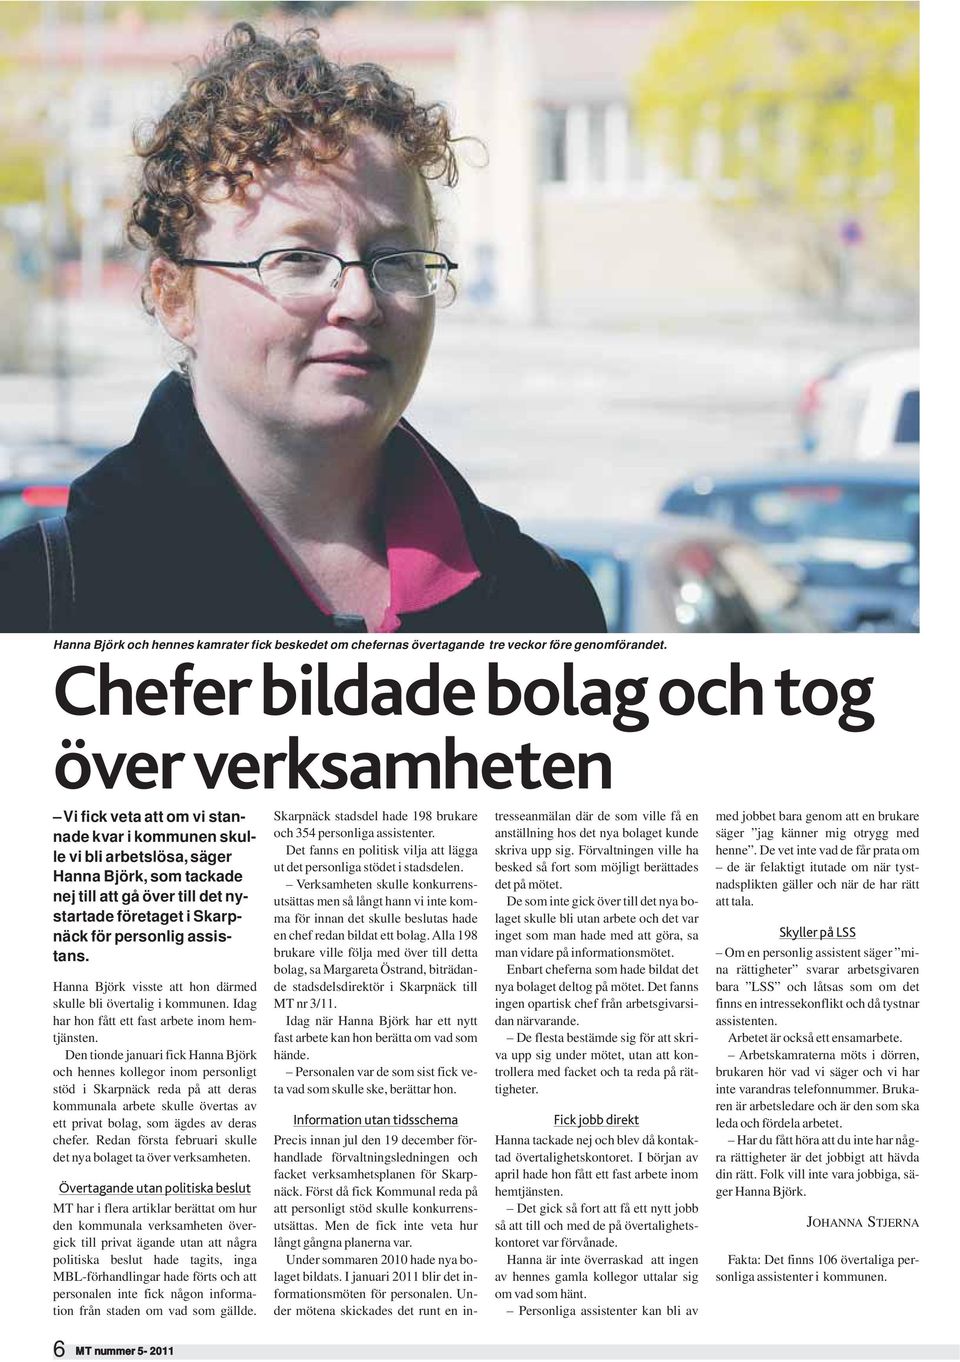 företaget i Skarpnäck för personlig assistans. Hanna Björk visste att hon därmed skulle bli övertalig i kommunen. Idag har hon fått ett fast arbete inom hemtjänsten.